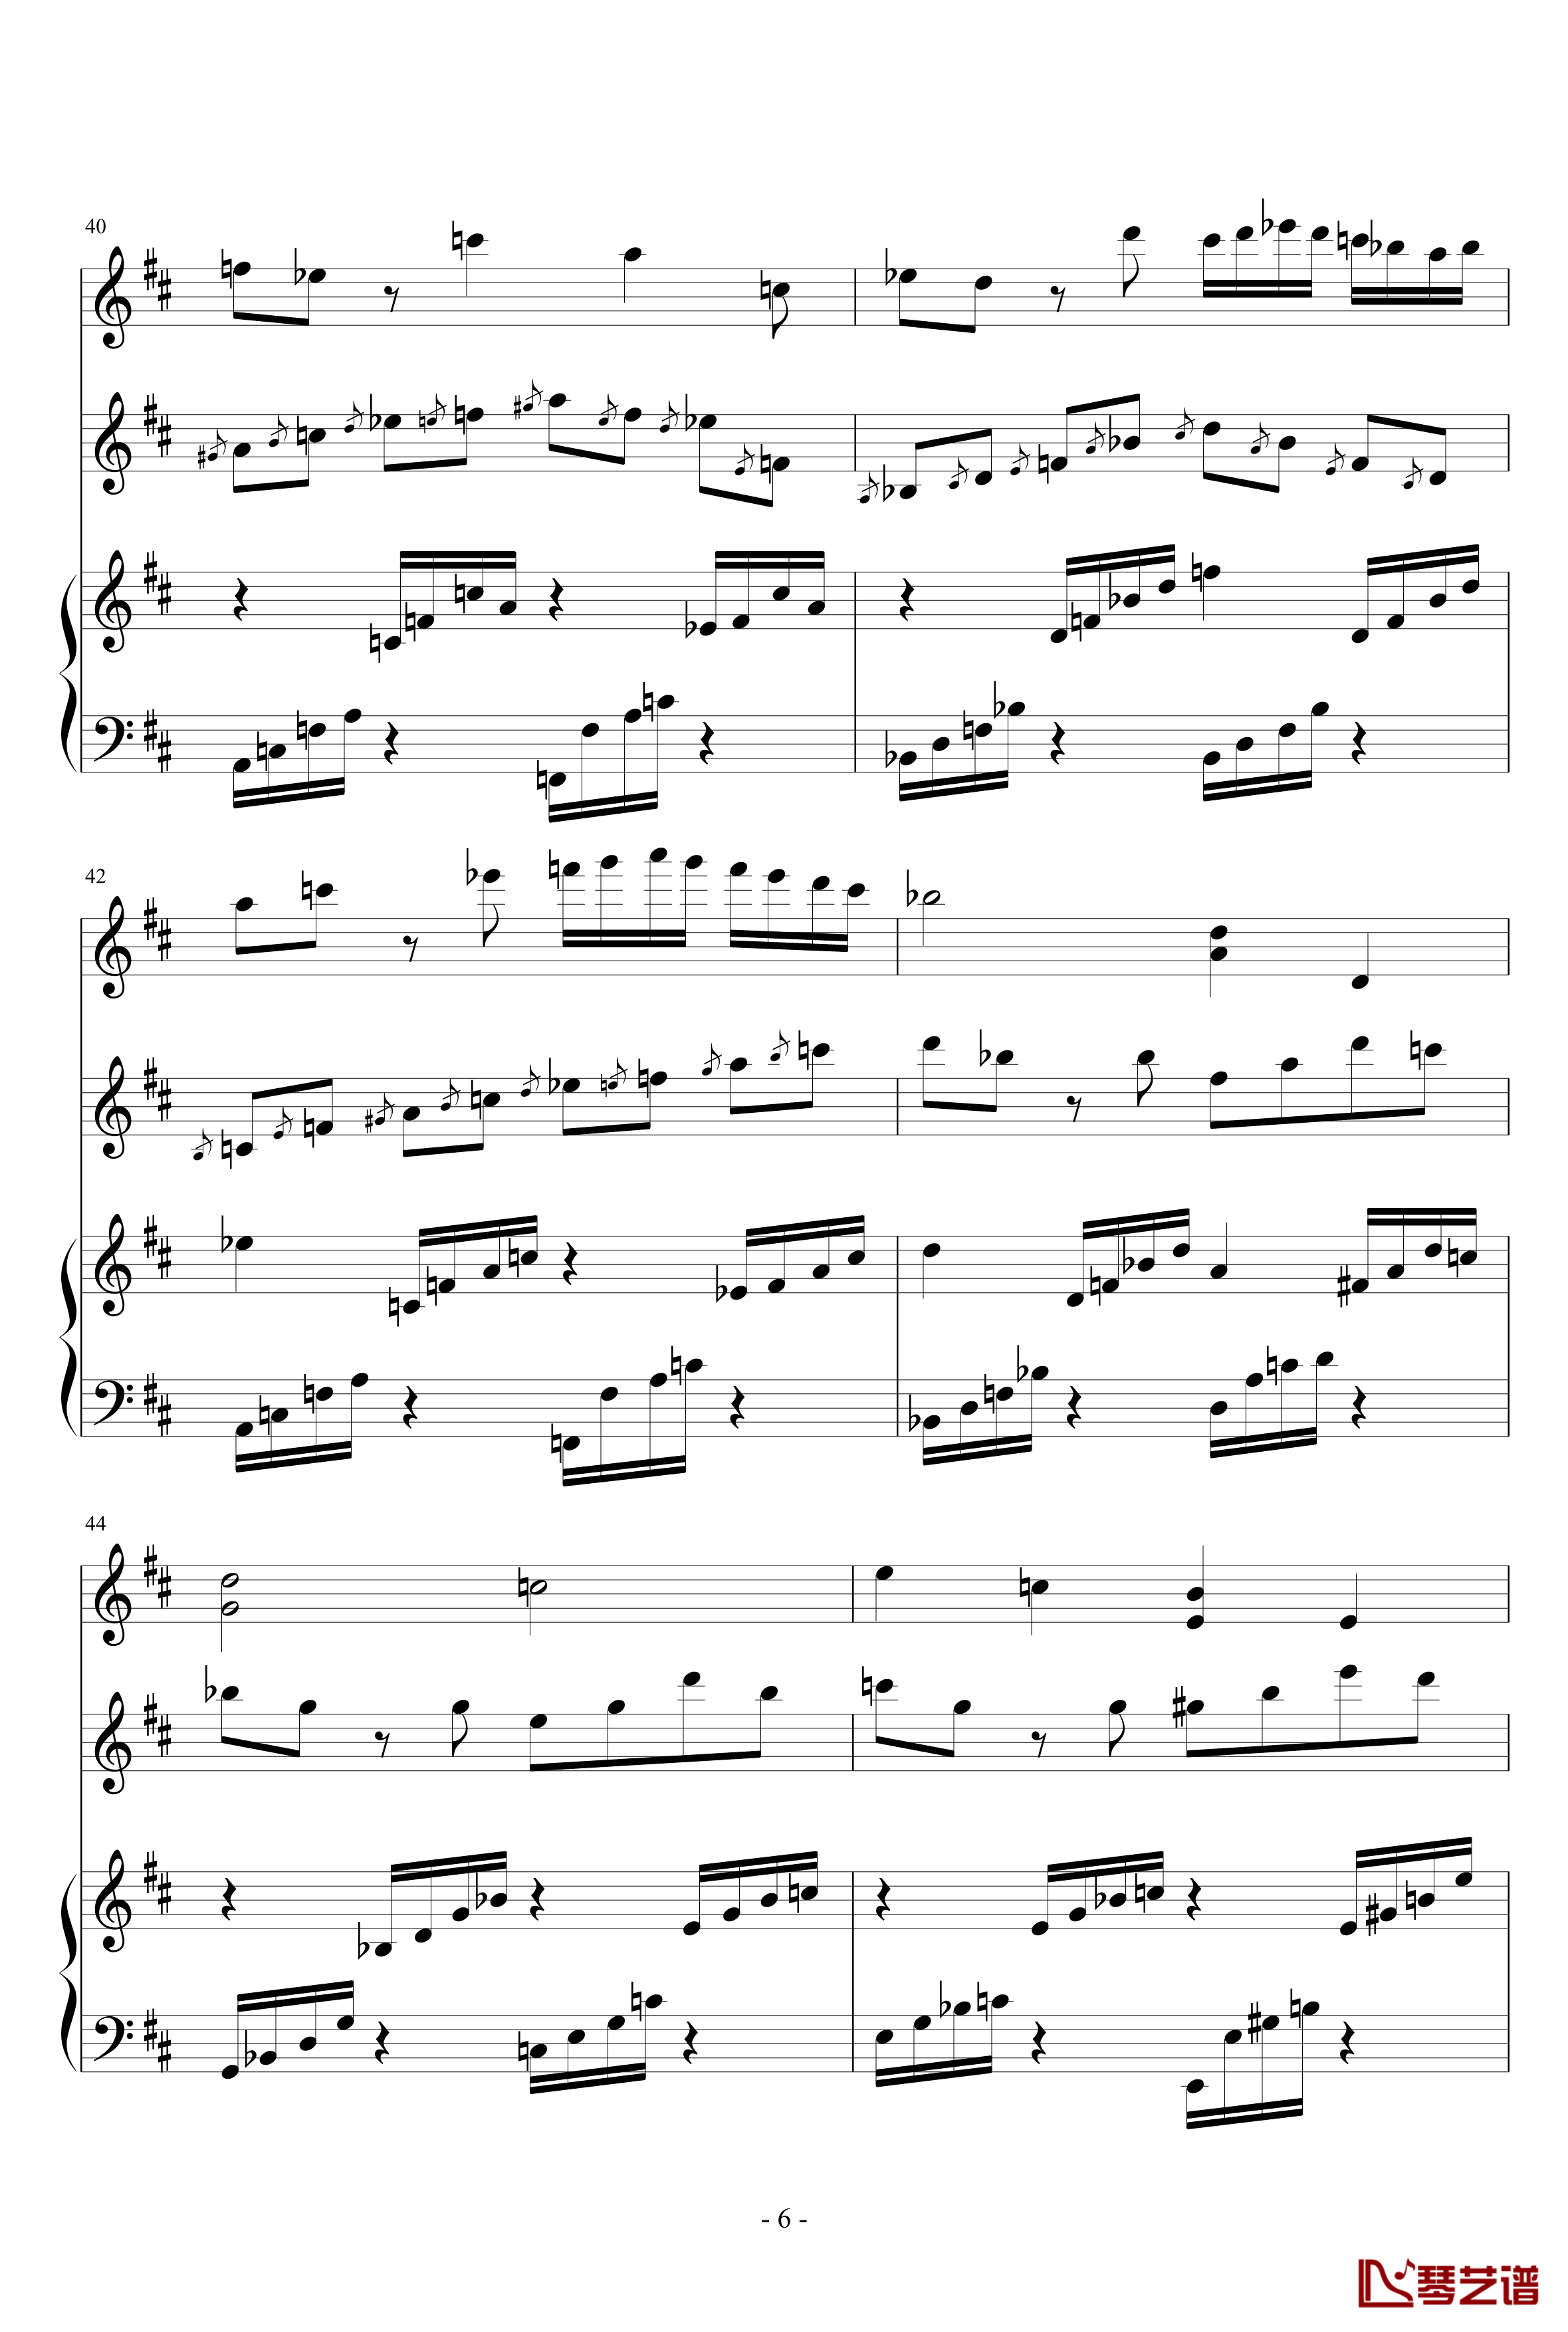 春之歌钢琴谱-nzh19346